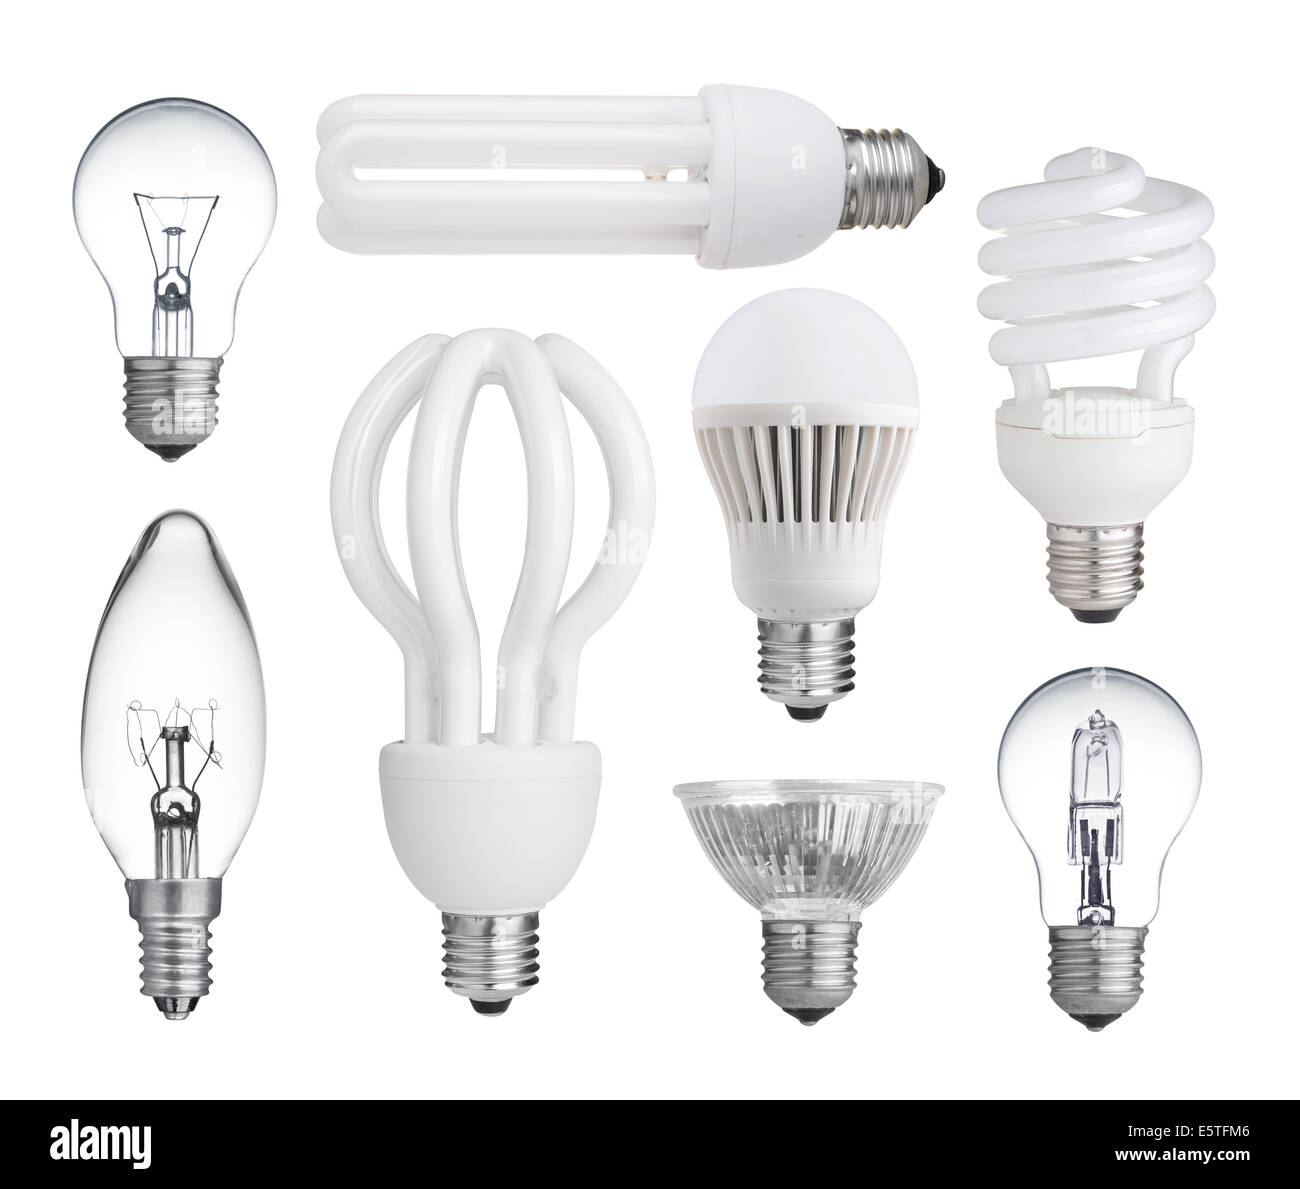 Conjunto de lámparas incandescentes, halógenas, fluorescentes compactas,  bombillas LED aislado sobre fondo blanco Fotografía de stock - Alamy